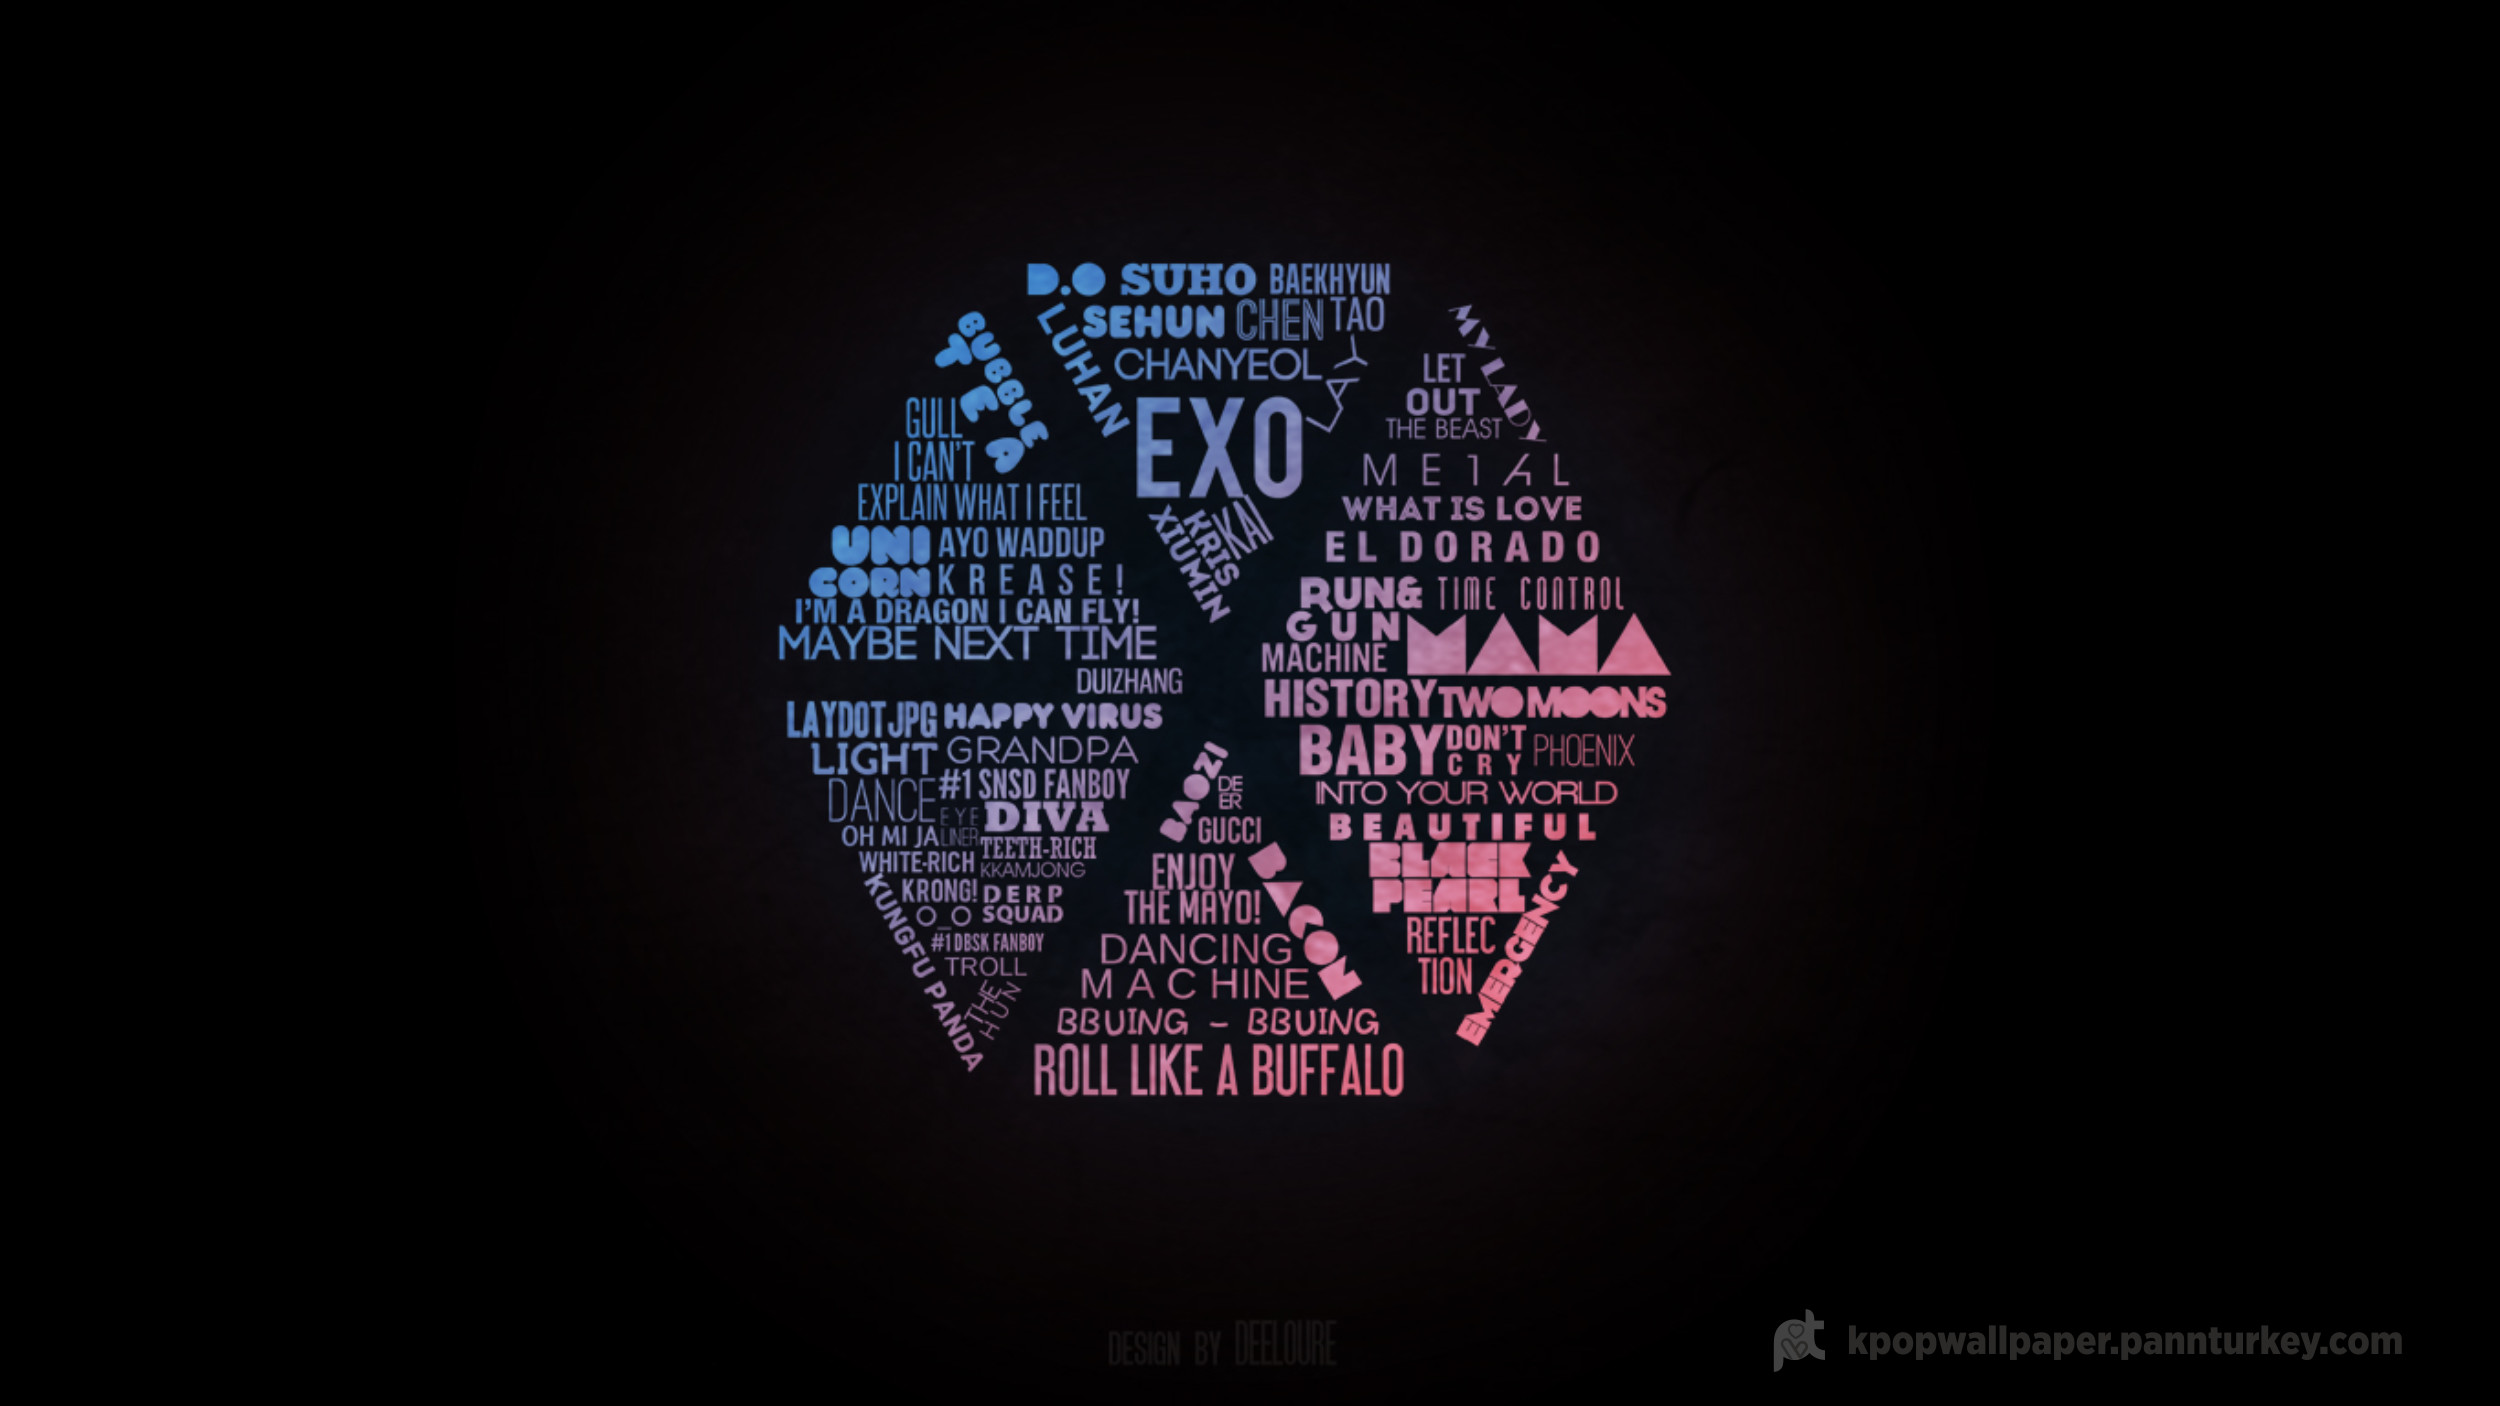 Exo Logo Wallpaper Full Hd